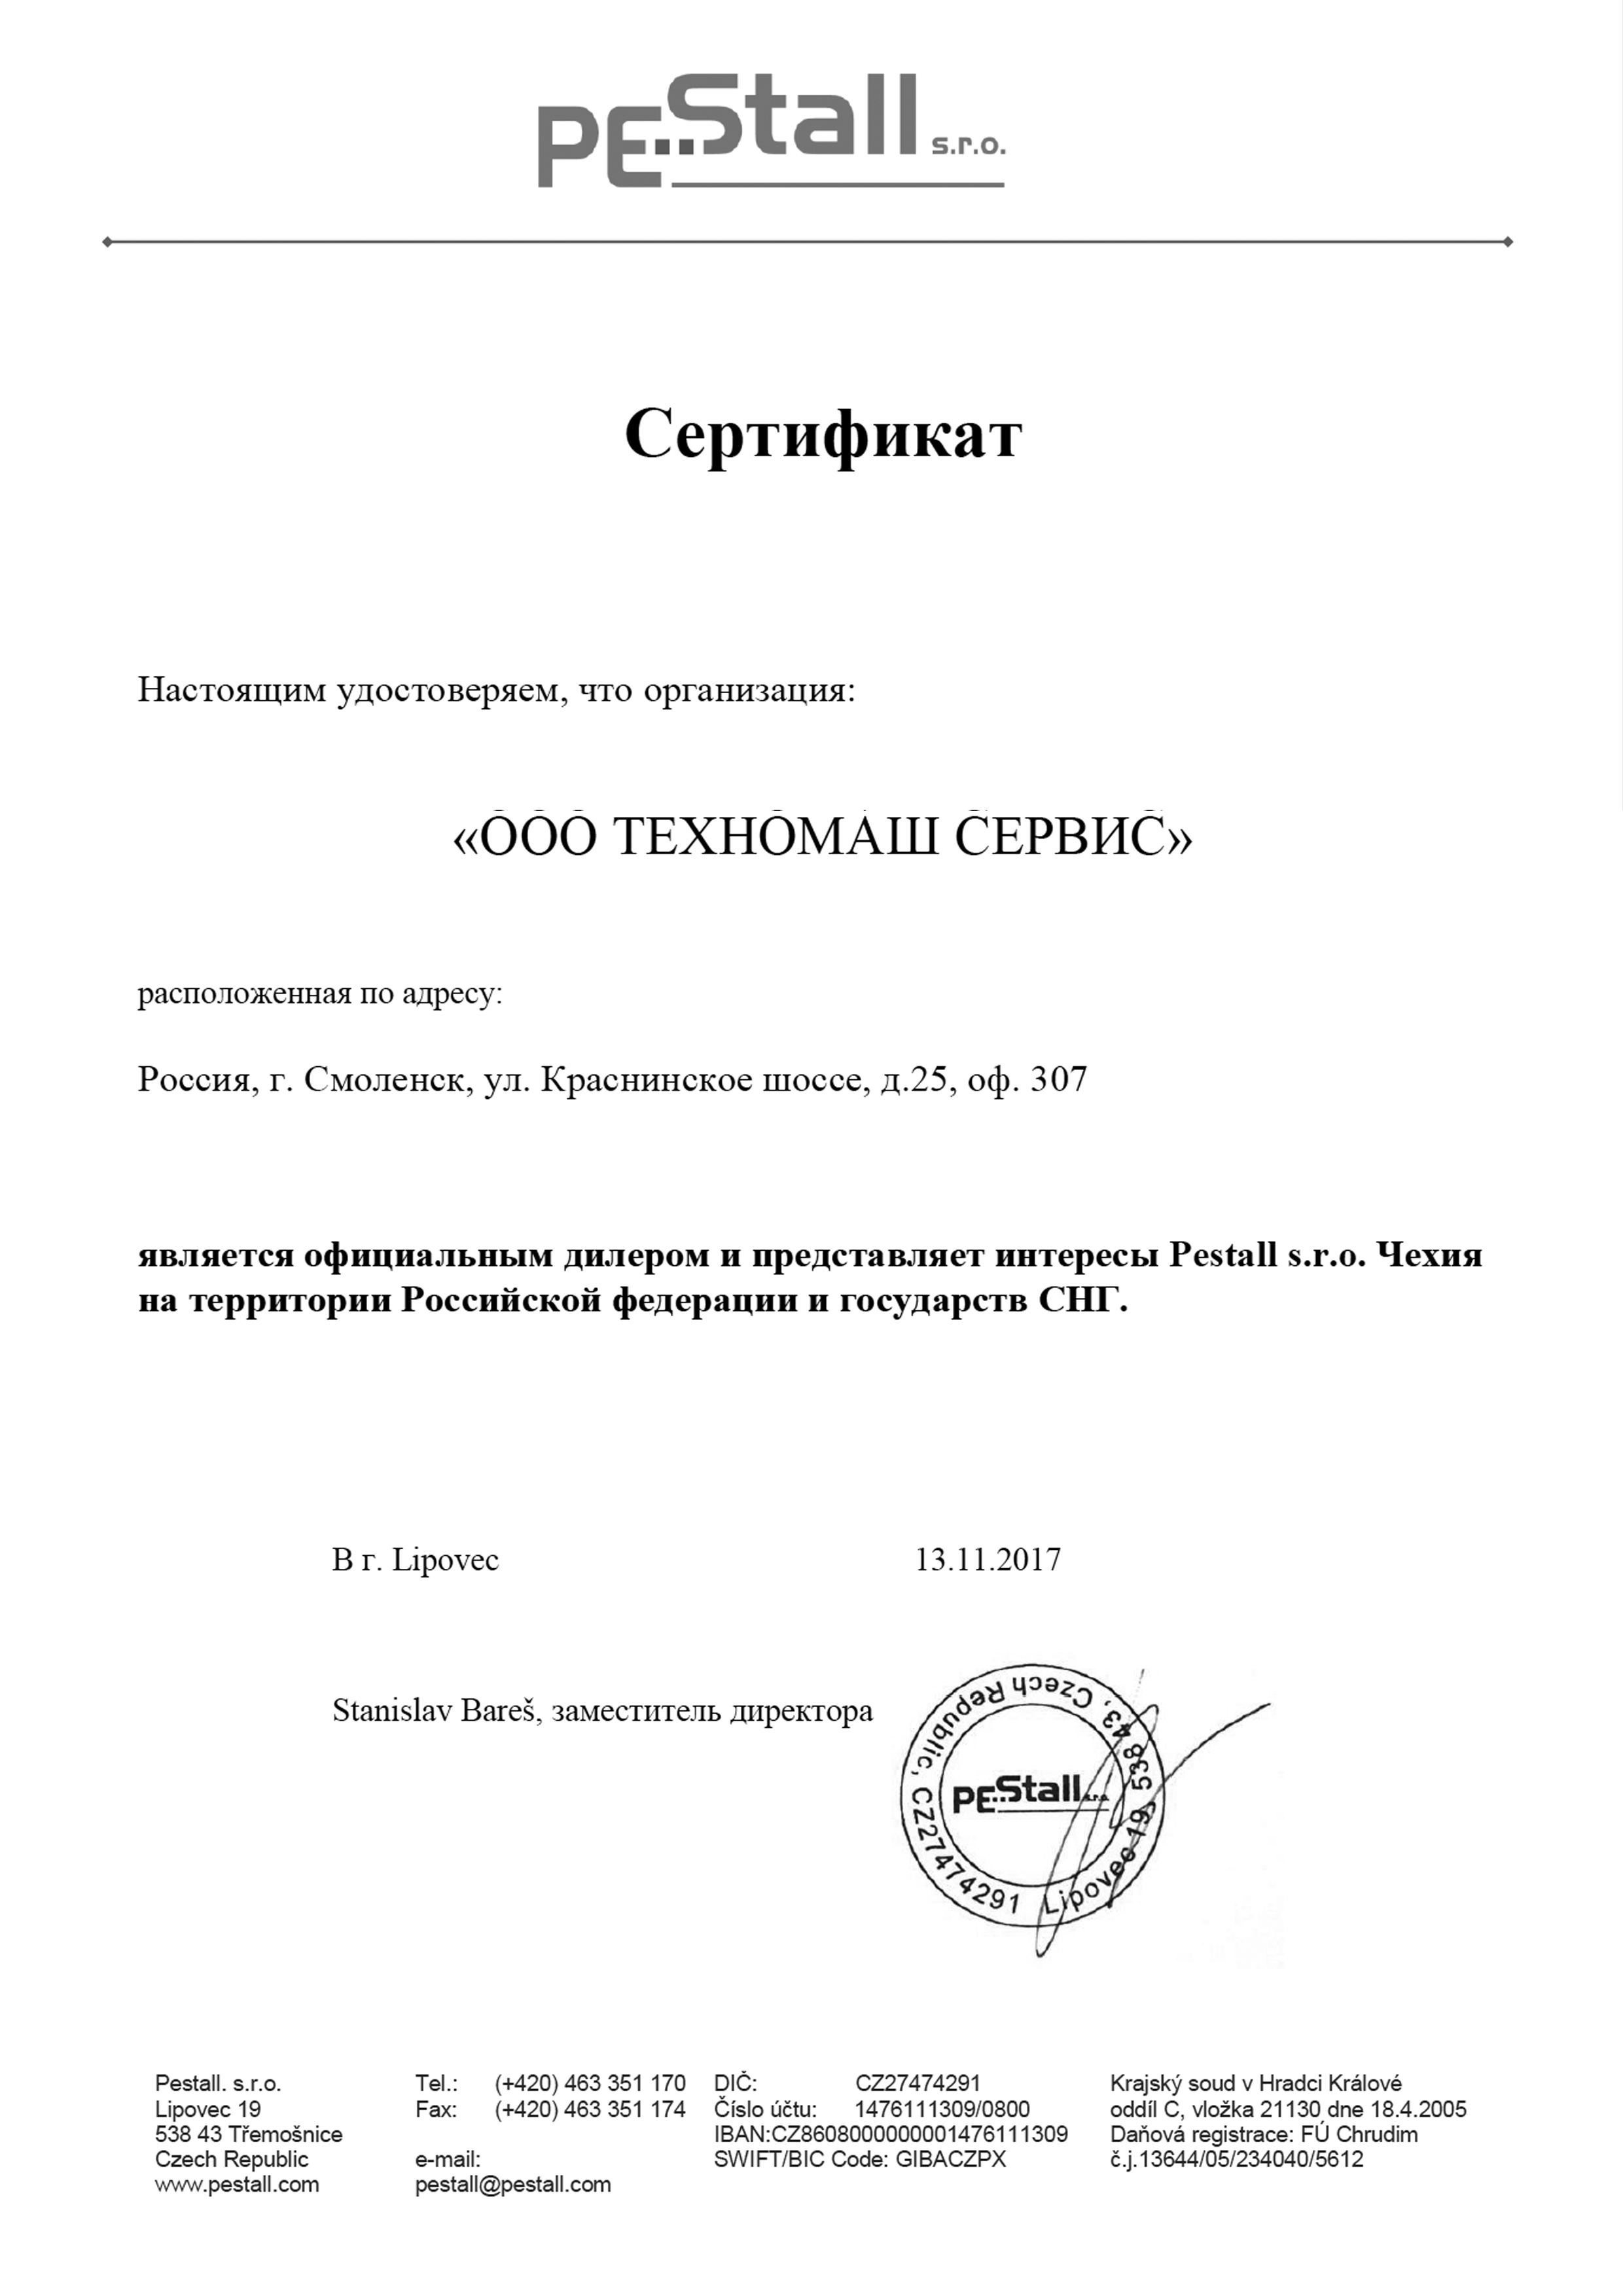 Сертификат официального дилера PeStall